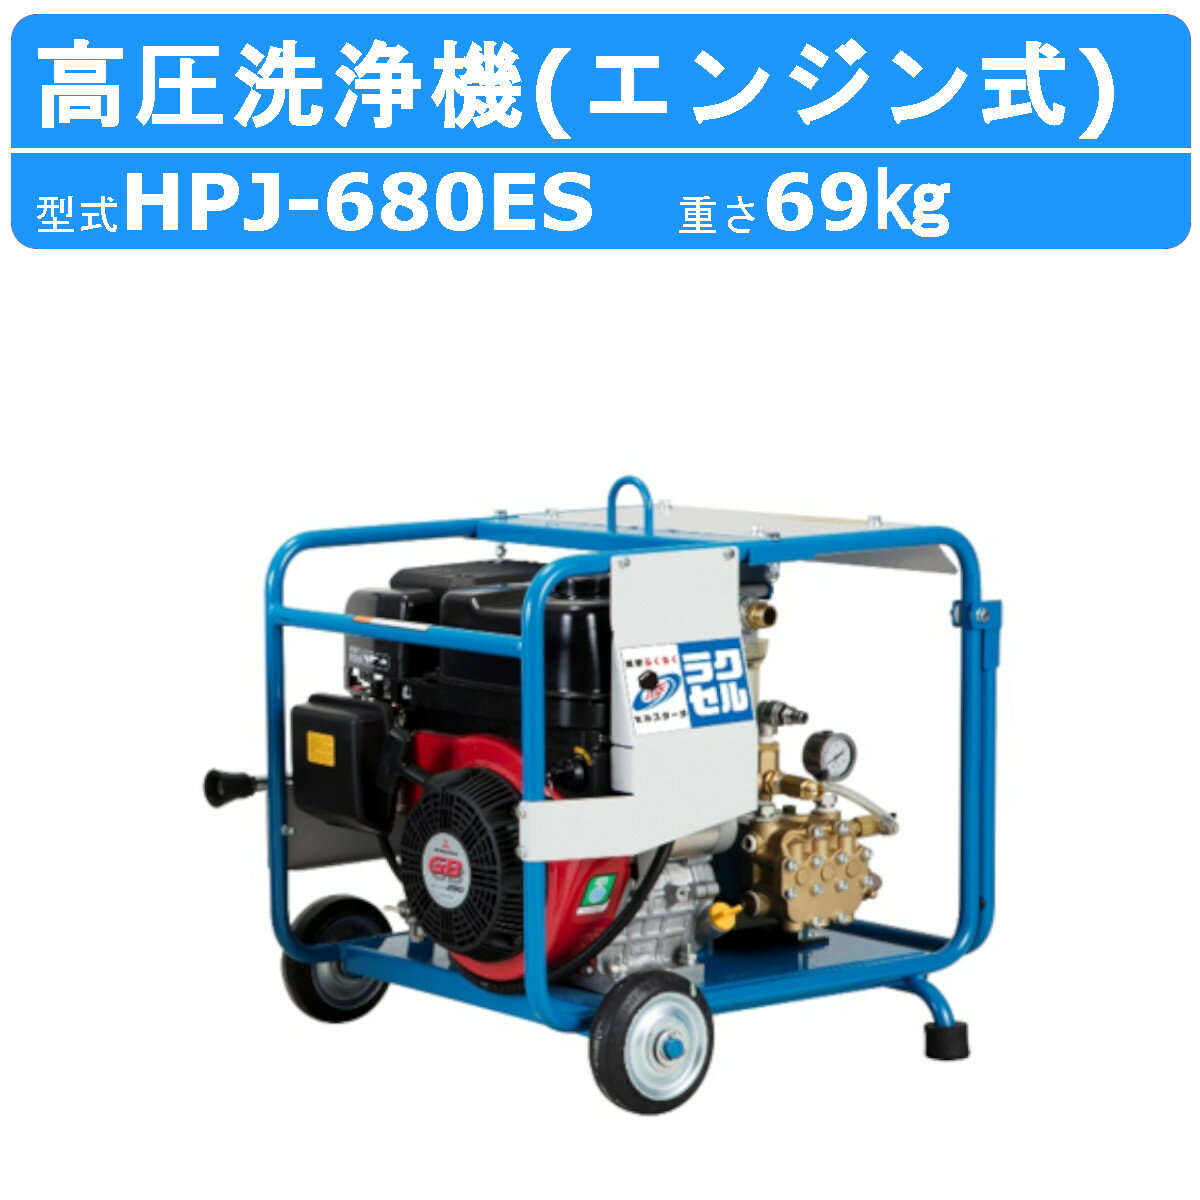 ツルミ 高圧洗浄機 HPJ-680ES エンジン